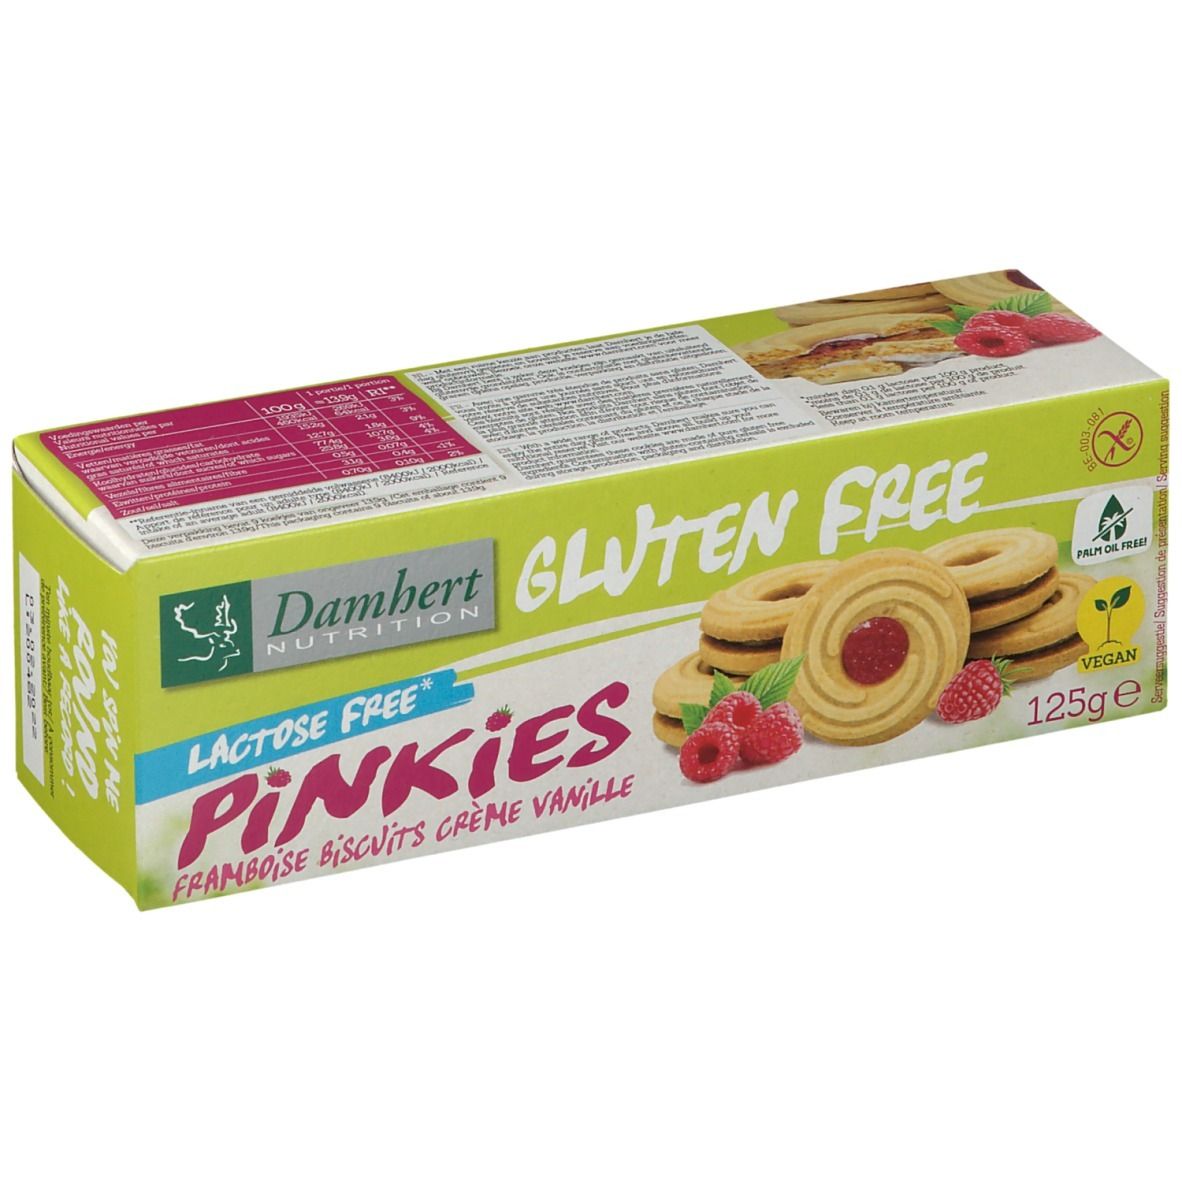 Damhert Gluten Free Pinkies Framboise biscuits crème vanille